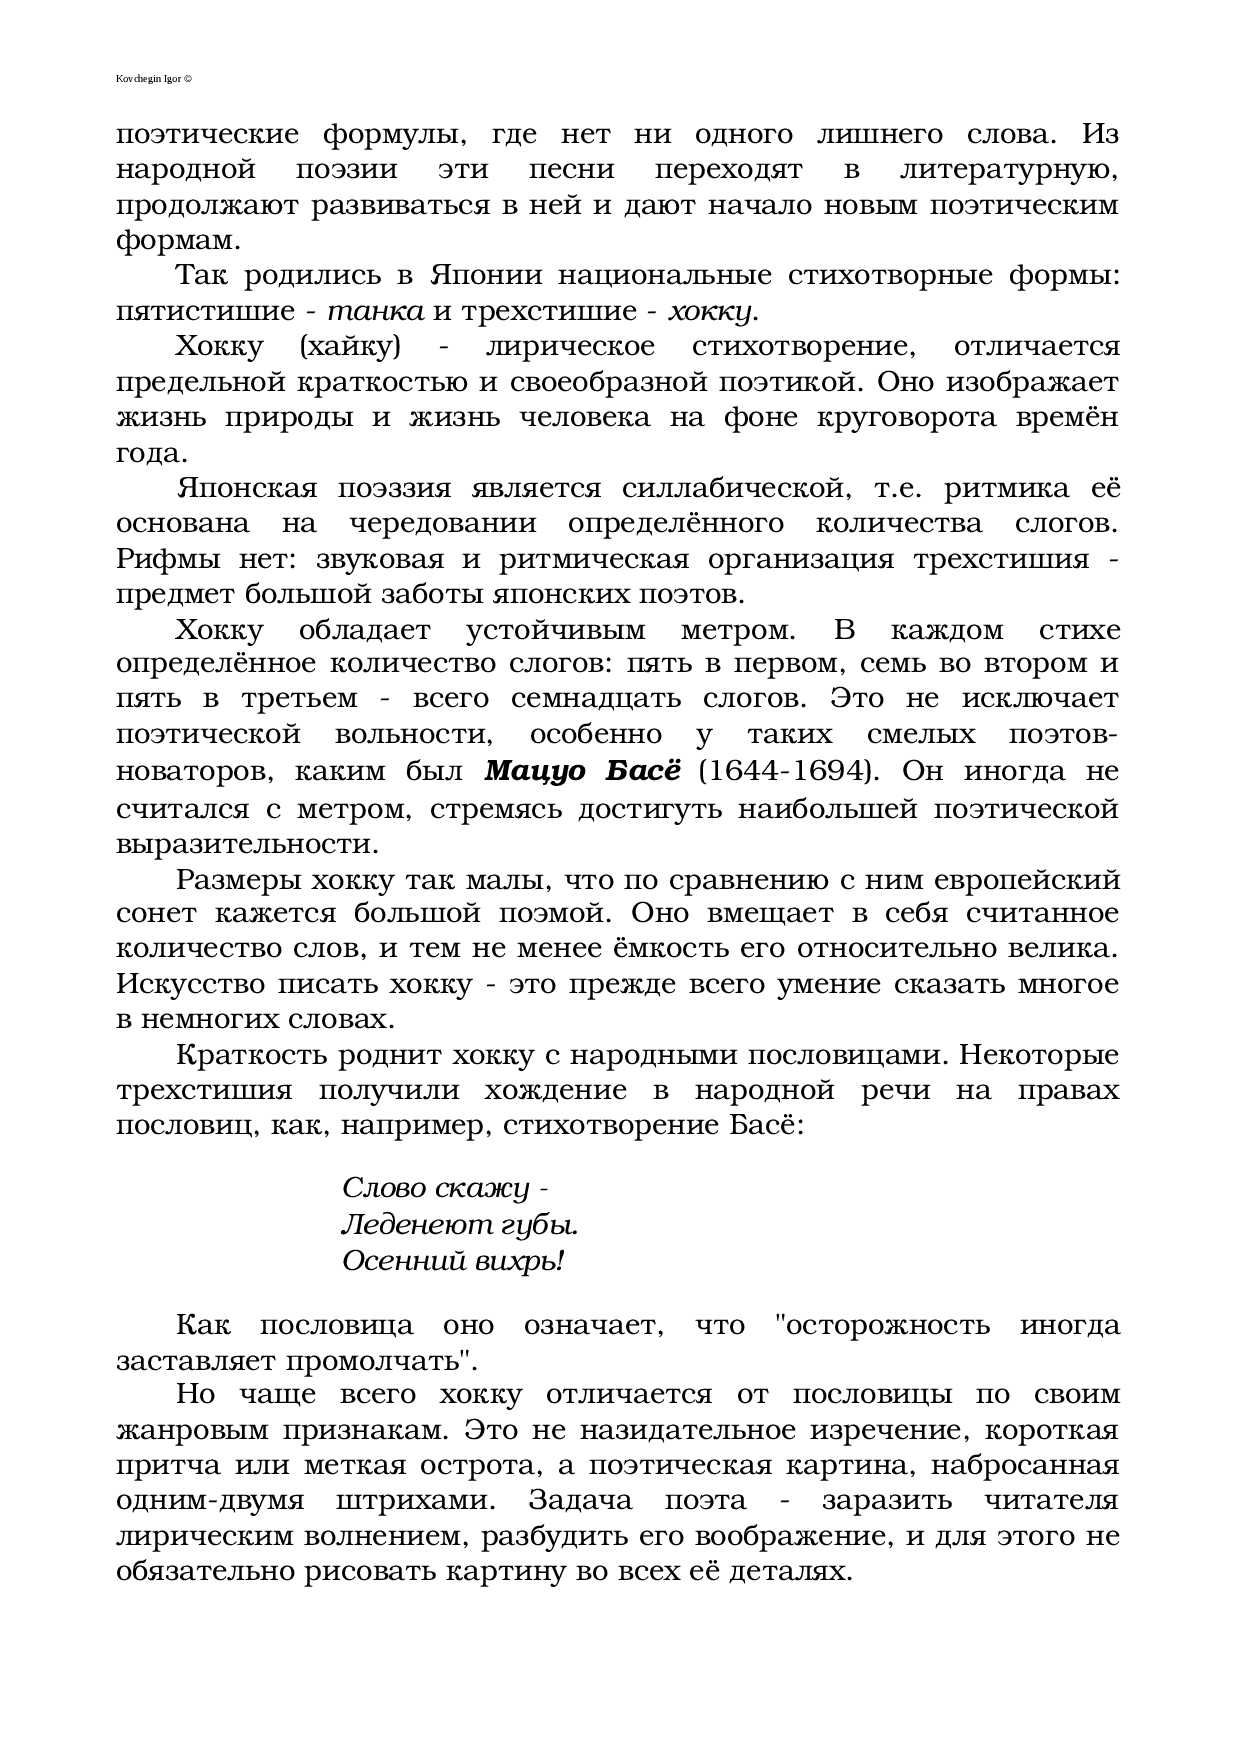 Правила составления и примеры хокку :: syl.ru